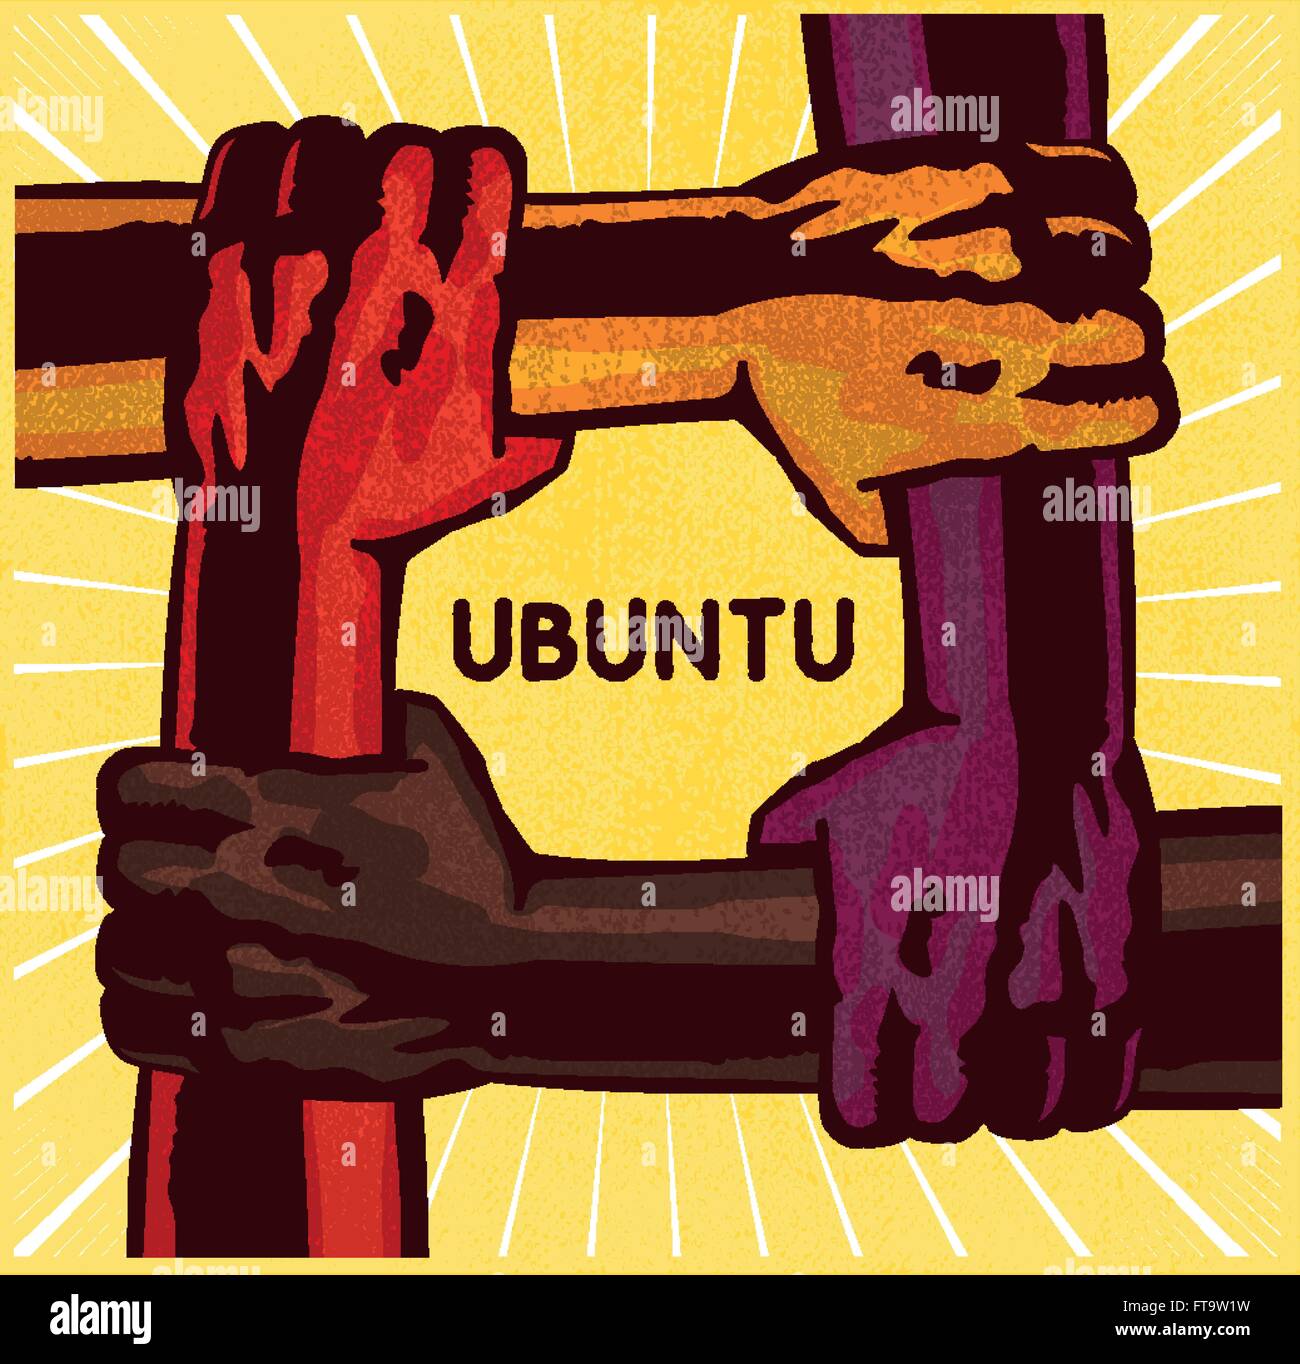 Ubuntu, bracci azienda ogni altro, il lavoro di squadra, di amicizia, di cooperazione e di sostegno reciproco, il concetto di solidarietà illustrazione vettoriale Illustrazione Vettoriale